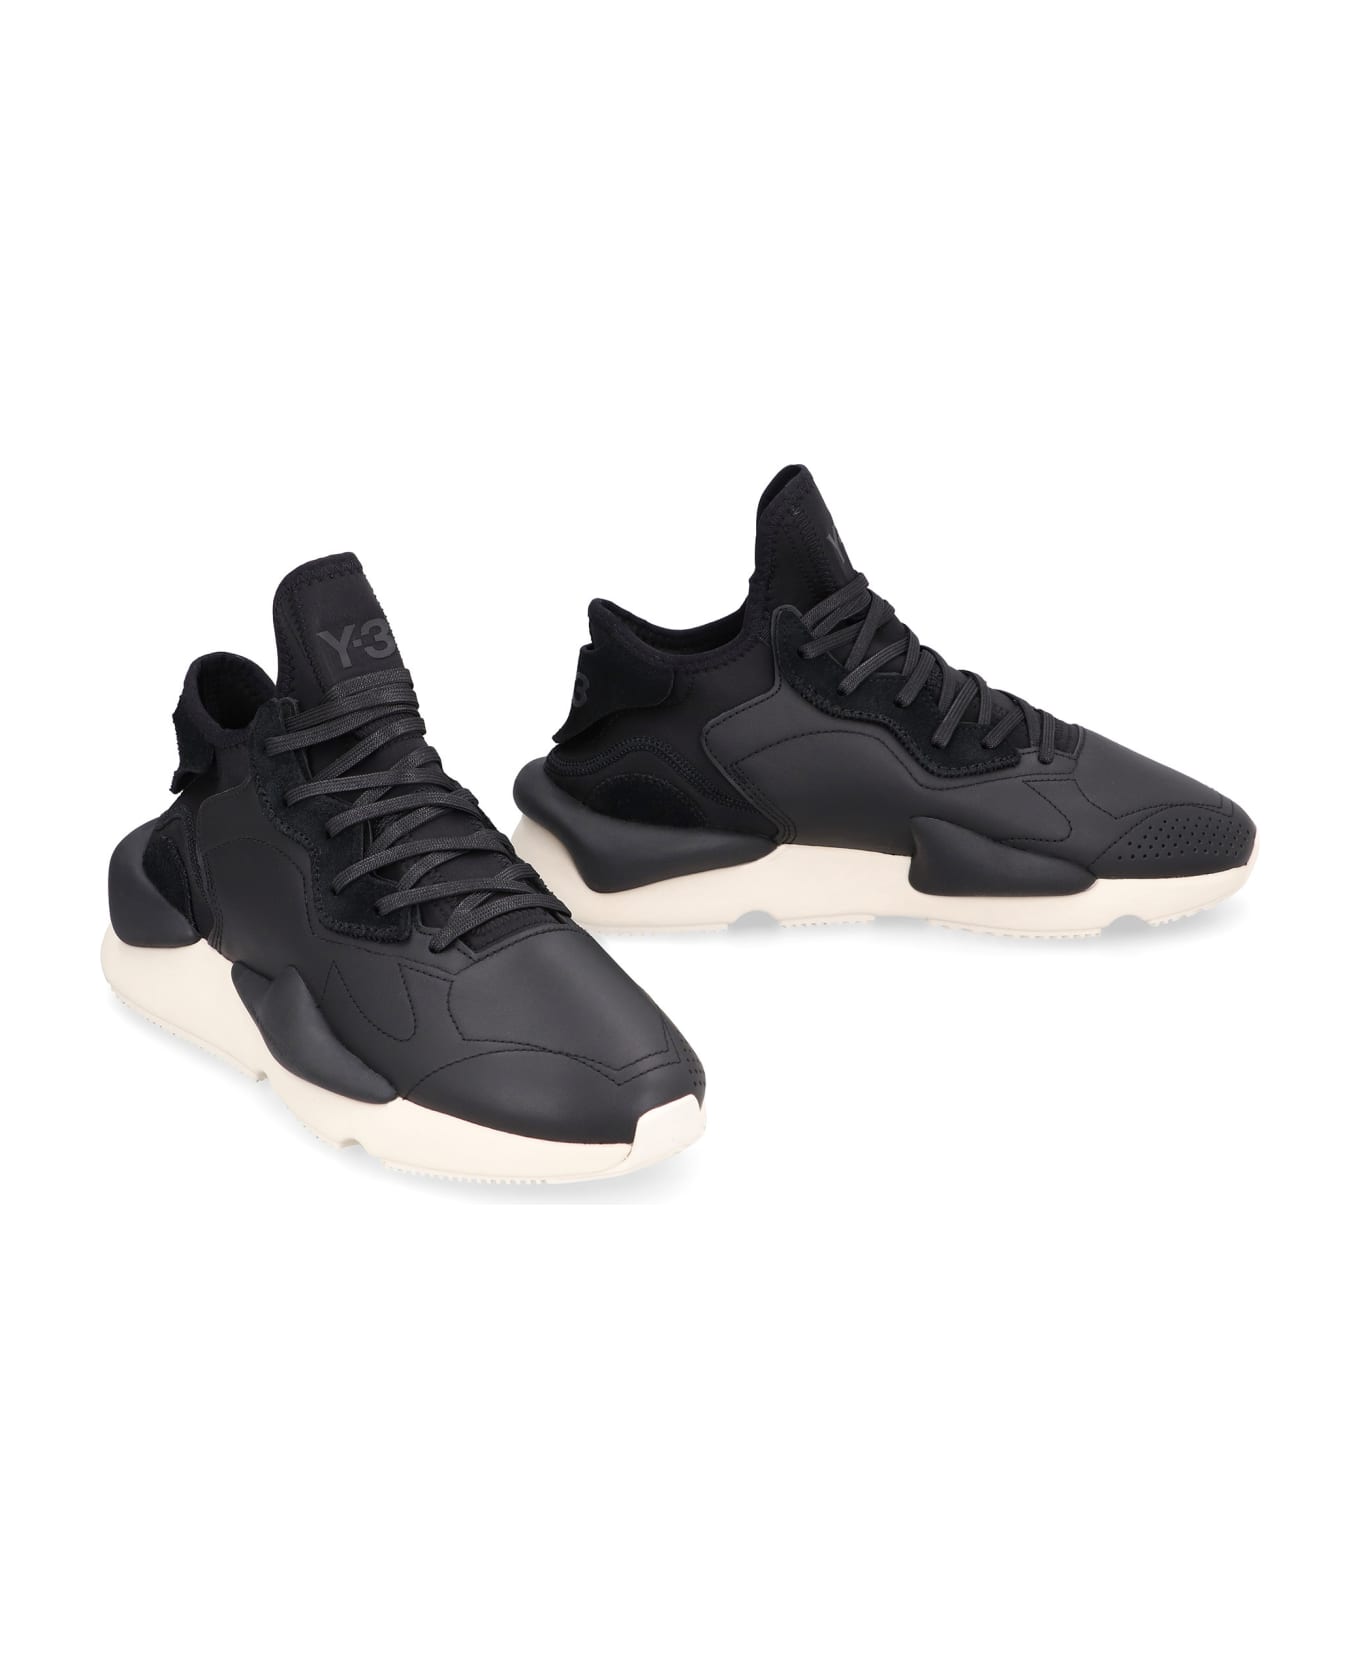 Y-3 Kaiwa Low-top Sneakers - black